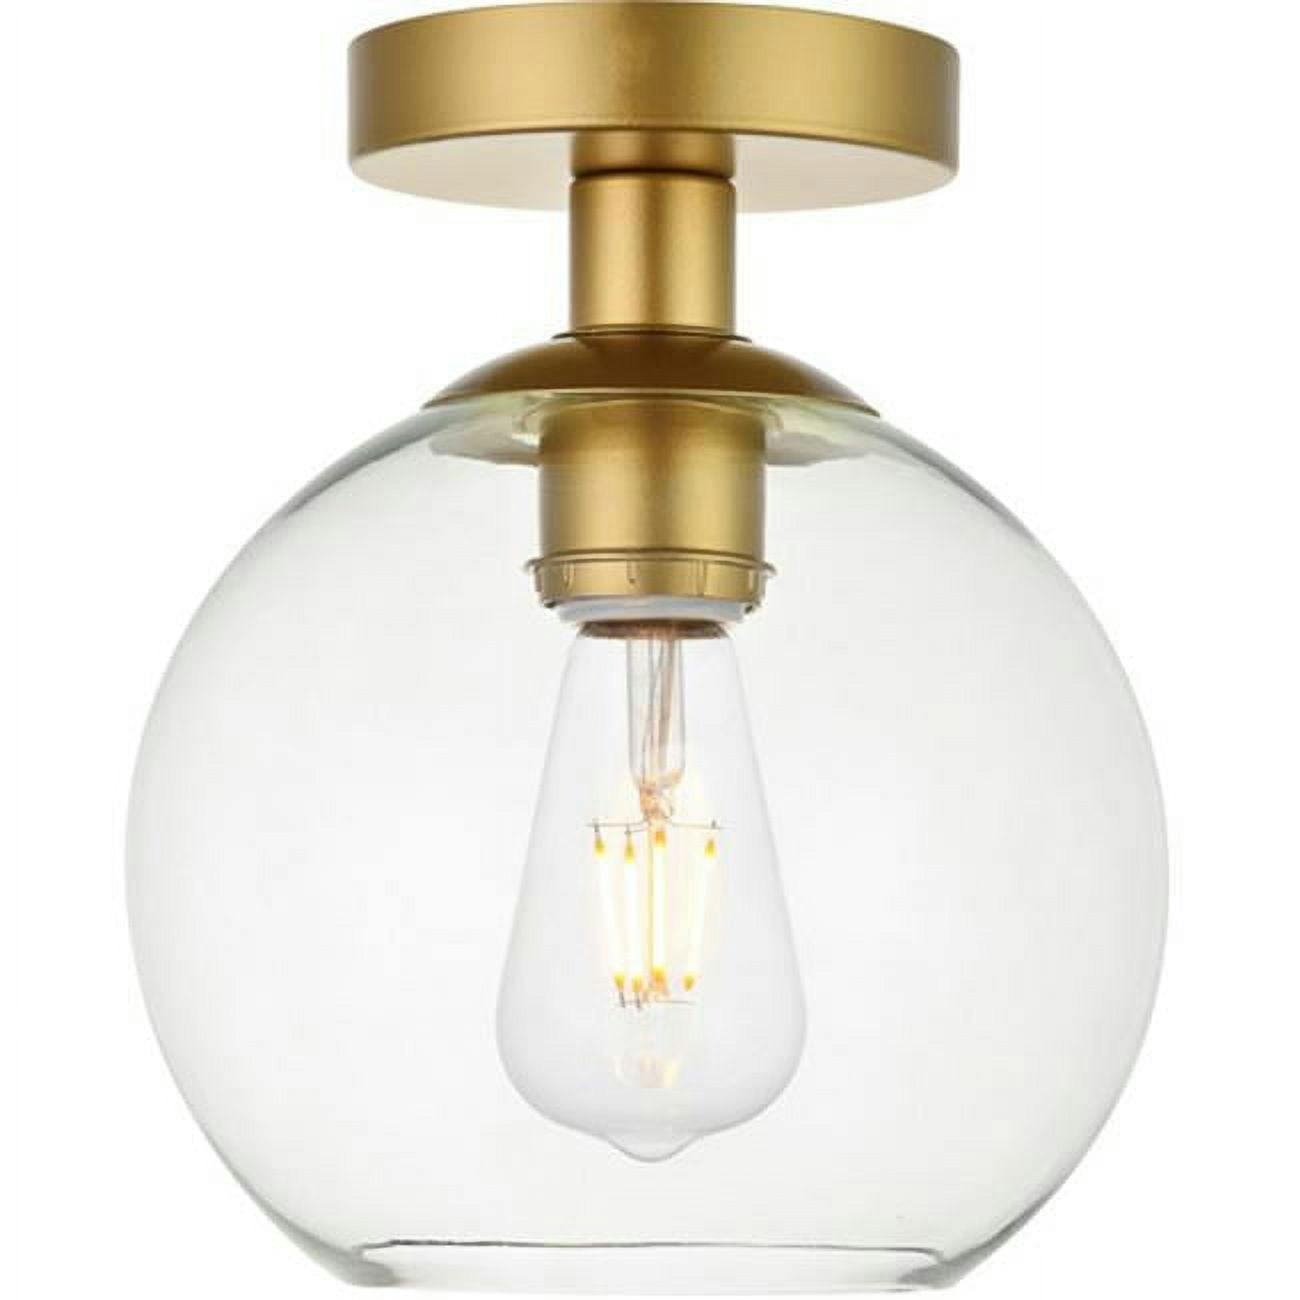 Baxter Cosmopolitan Brass & Glass Flush Mount Ceiling Light